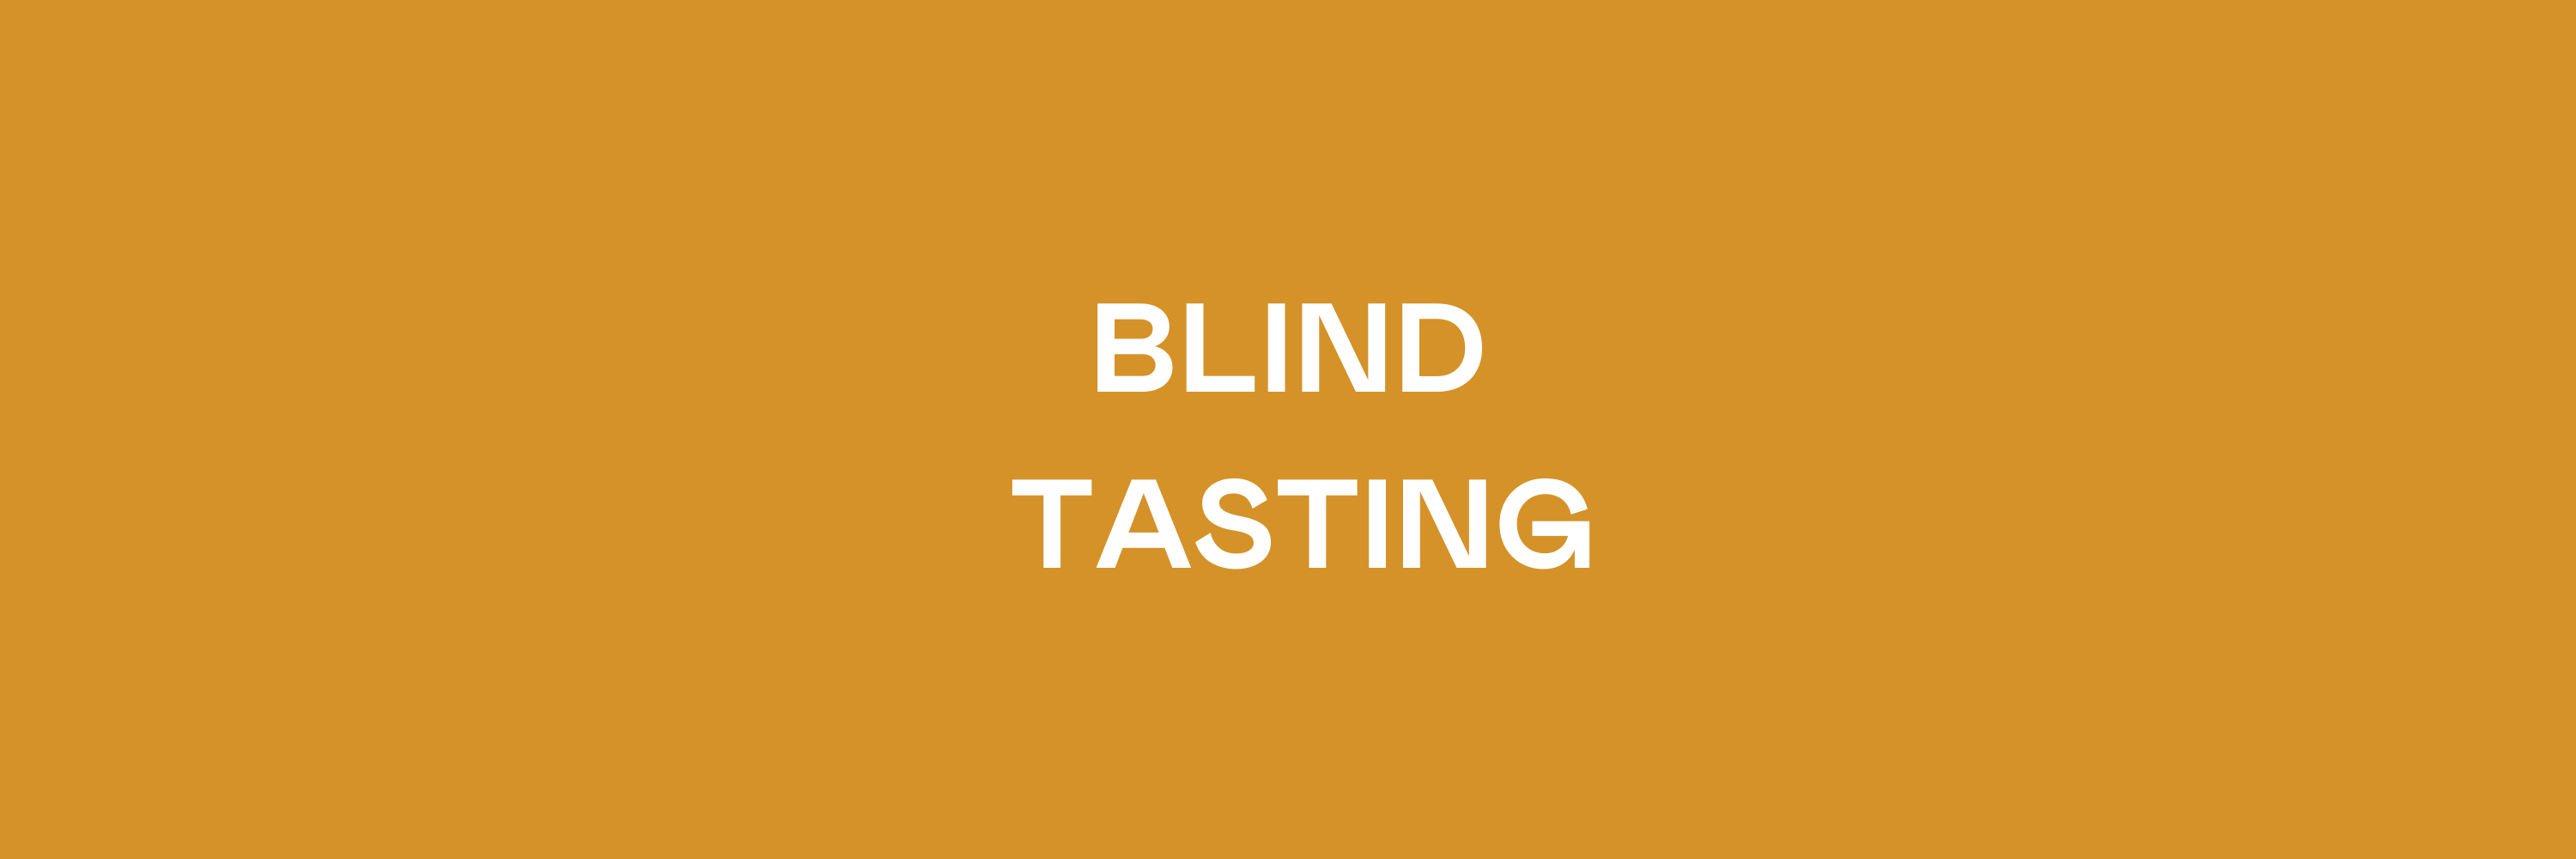 Blind Tasting